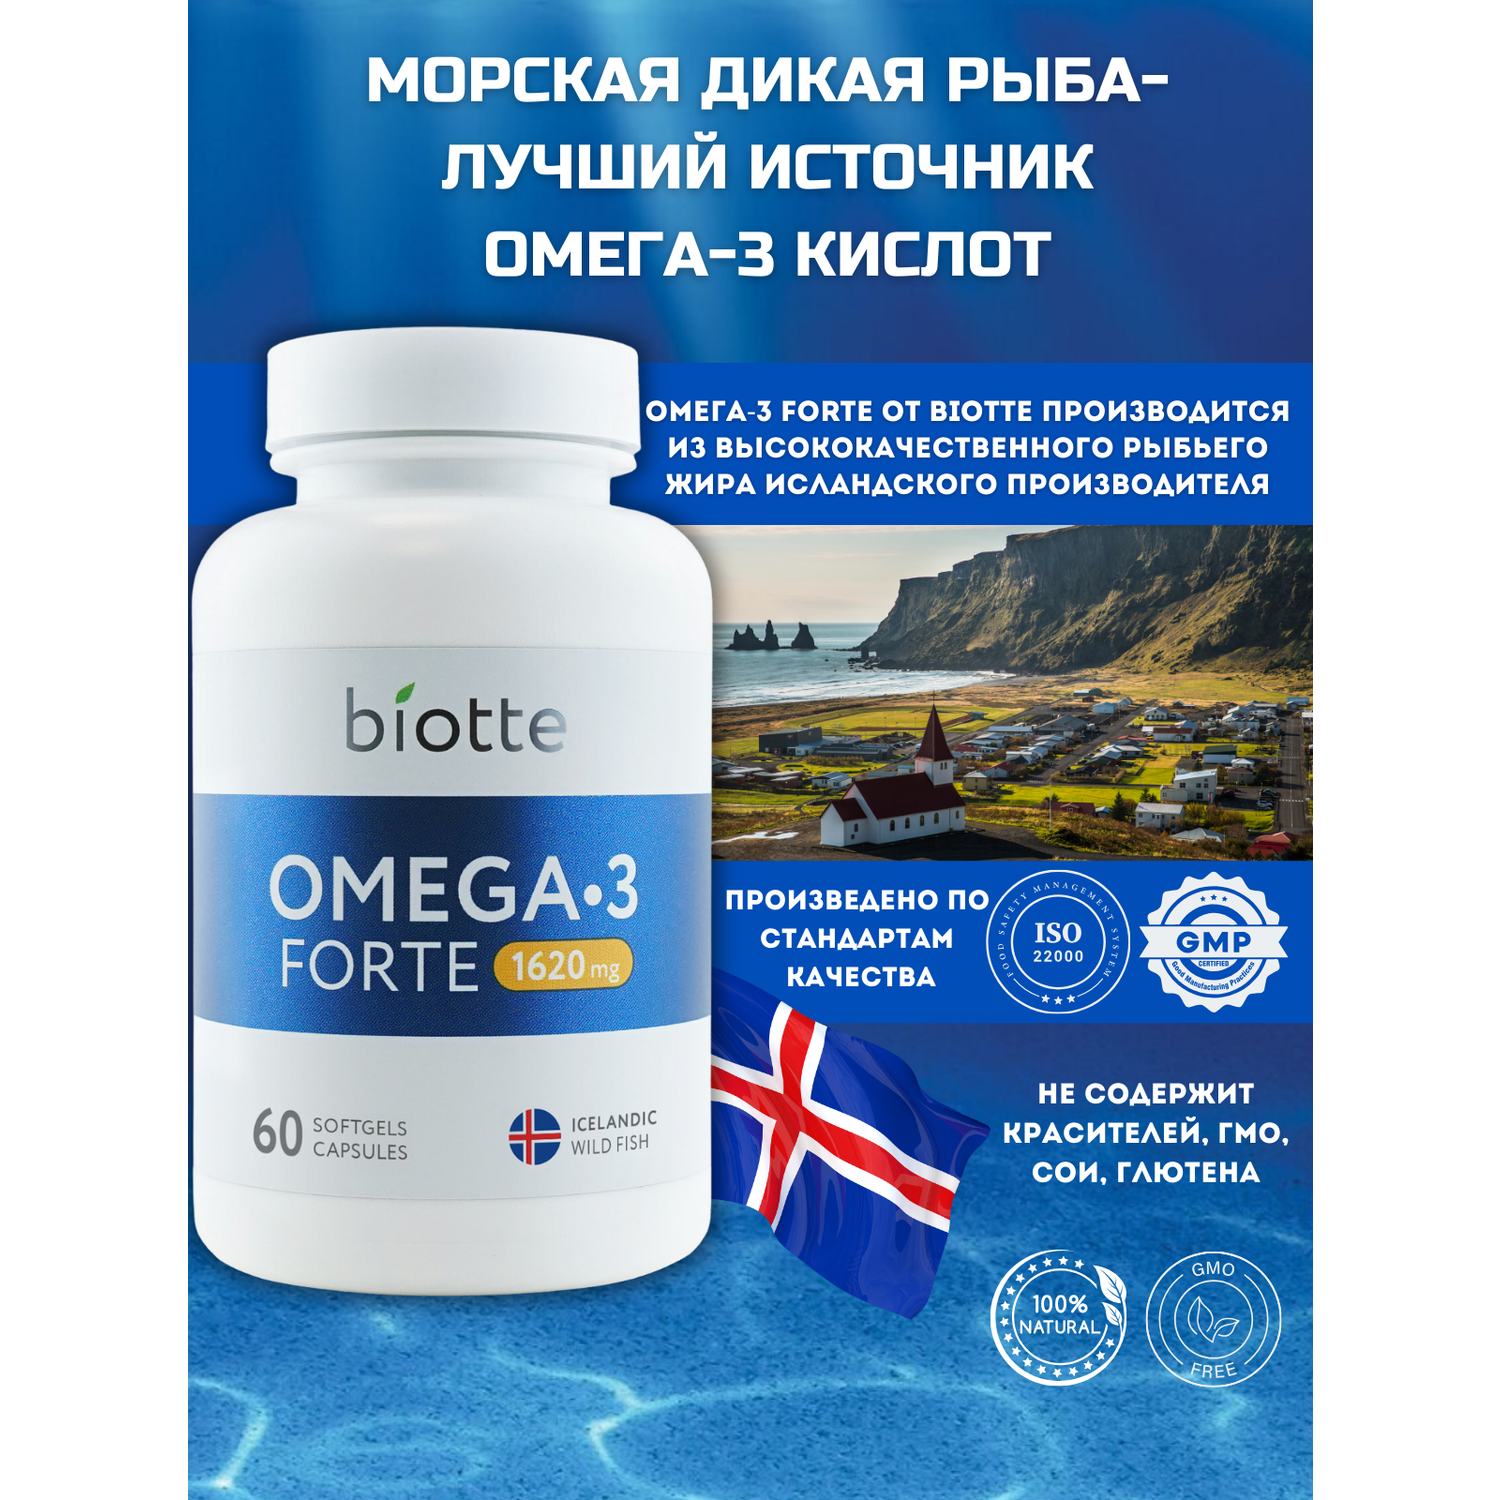 Омега-3 форте в капсулах BIOTTE премиальный рыбий жир для взрослых и подростков 60 капсул - фото 8